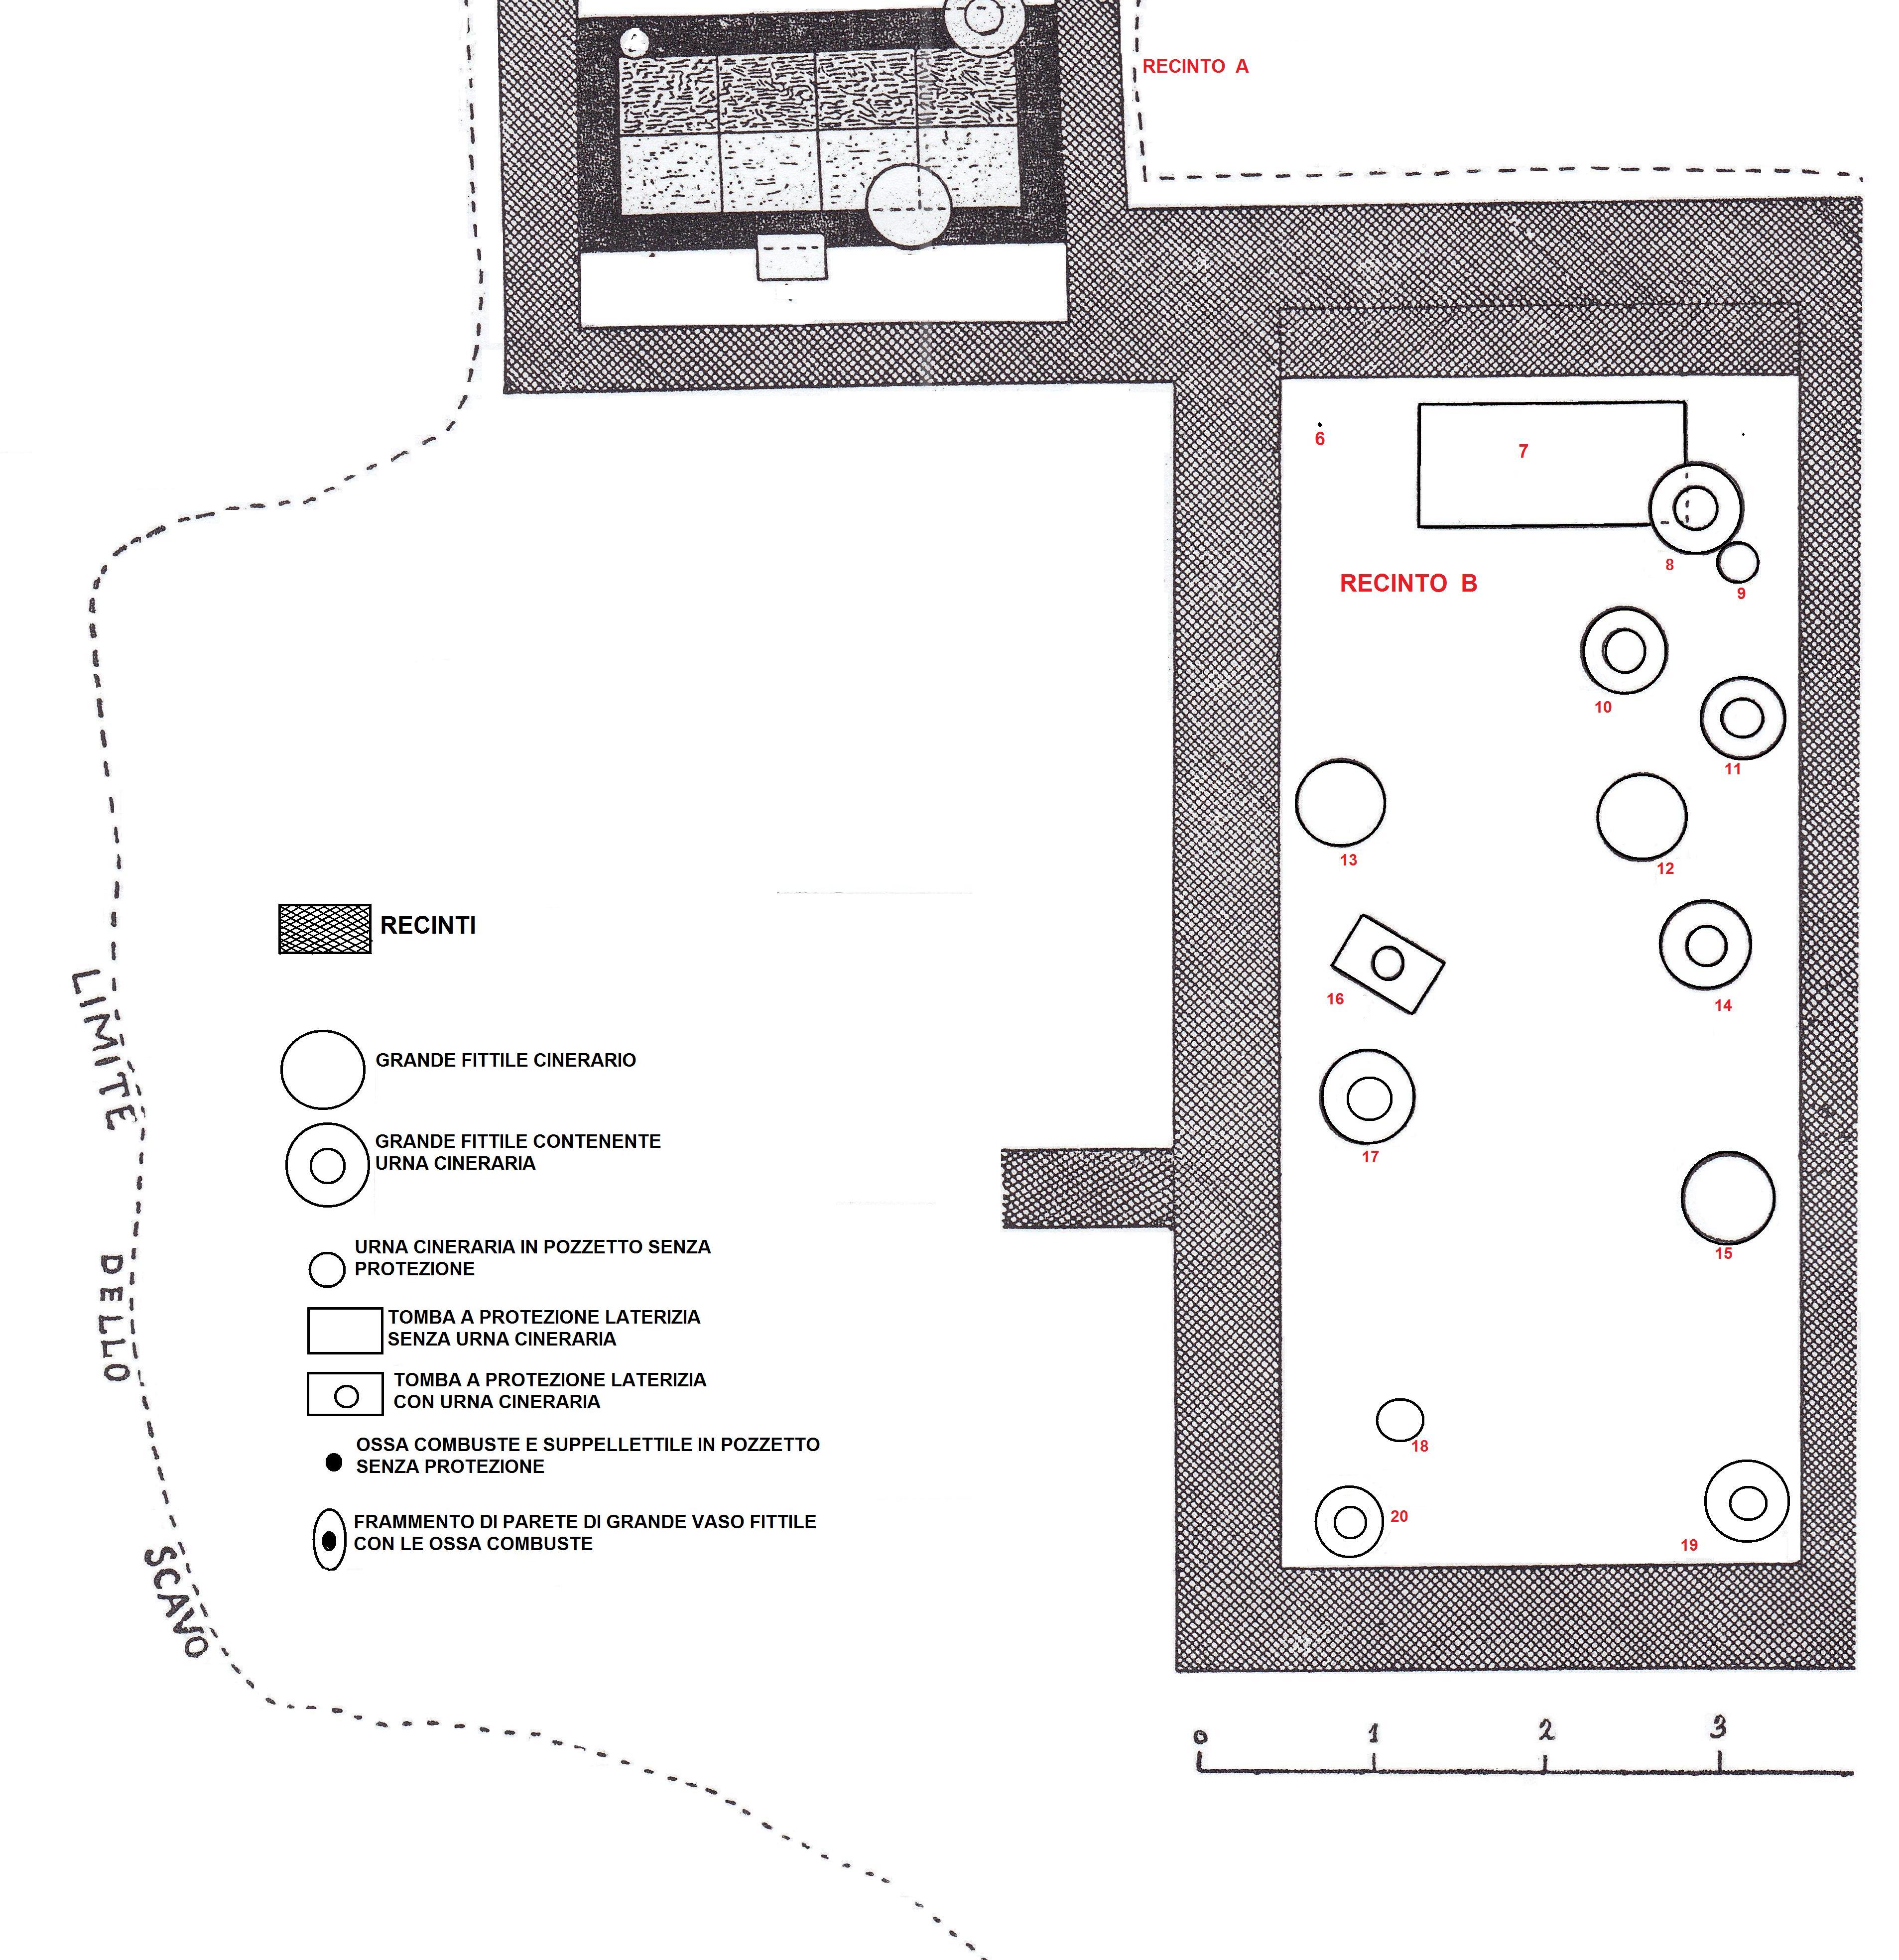 Necropoli di Albintimilium, Recinto B (recinto, area ad uso funerario) - Ventimiglia (IM)  (metà/ inizio Età romana imperiale)